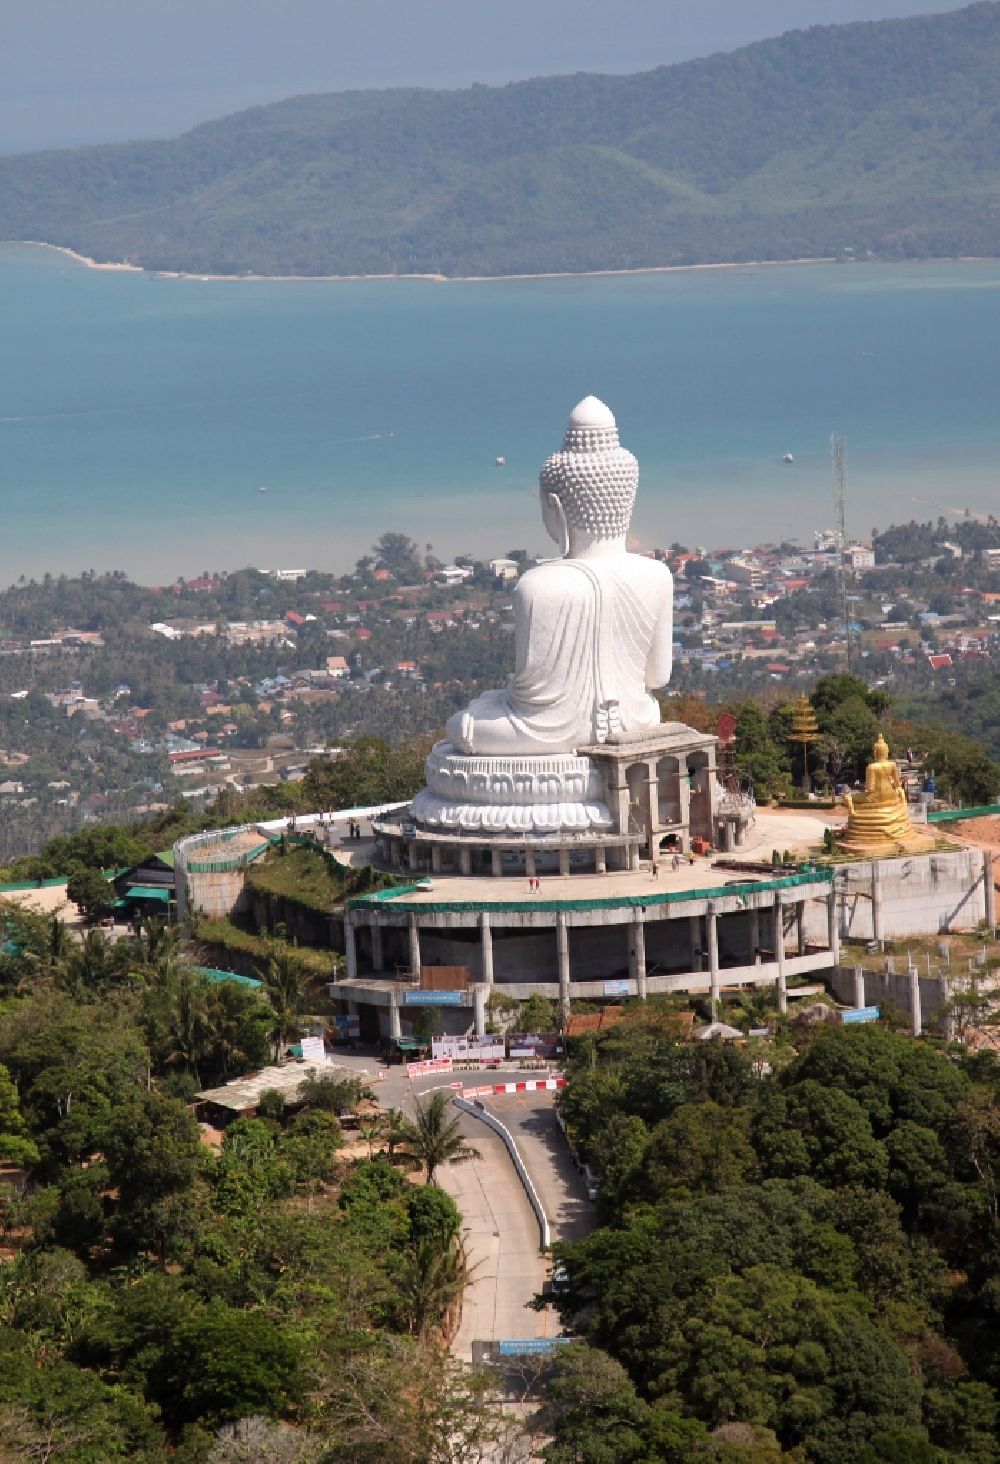 Luftaufnahme Karon - Buddha Statue über der Stadt Karon bei der Chalong-Bucht auf der Insel Phuket in Thailand